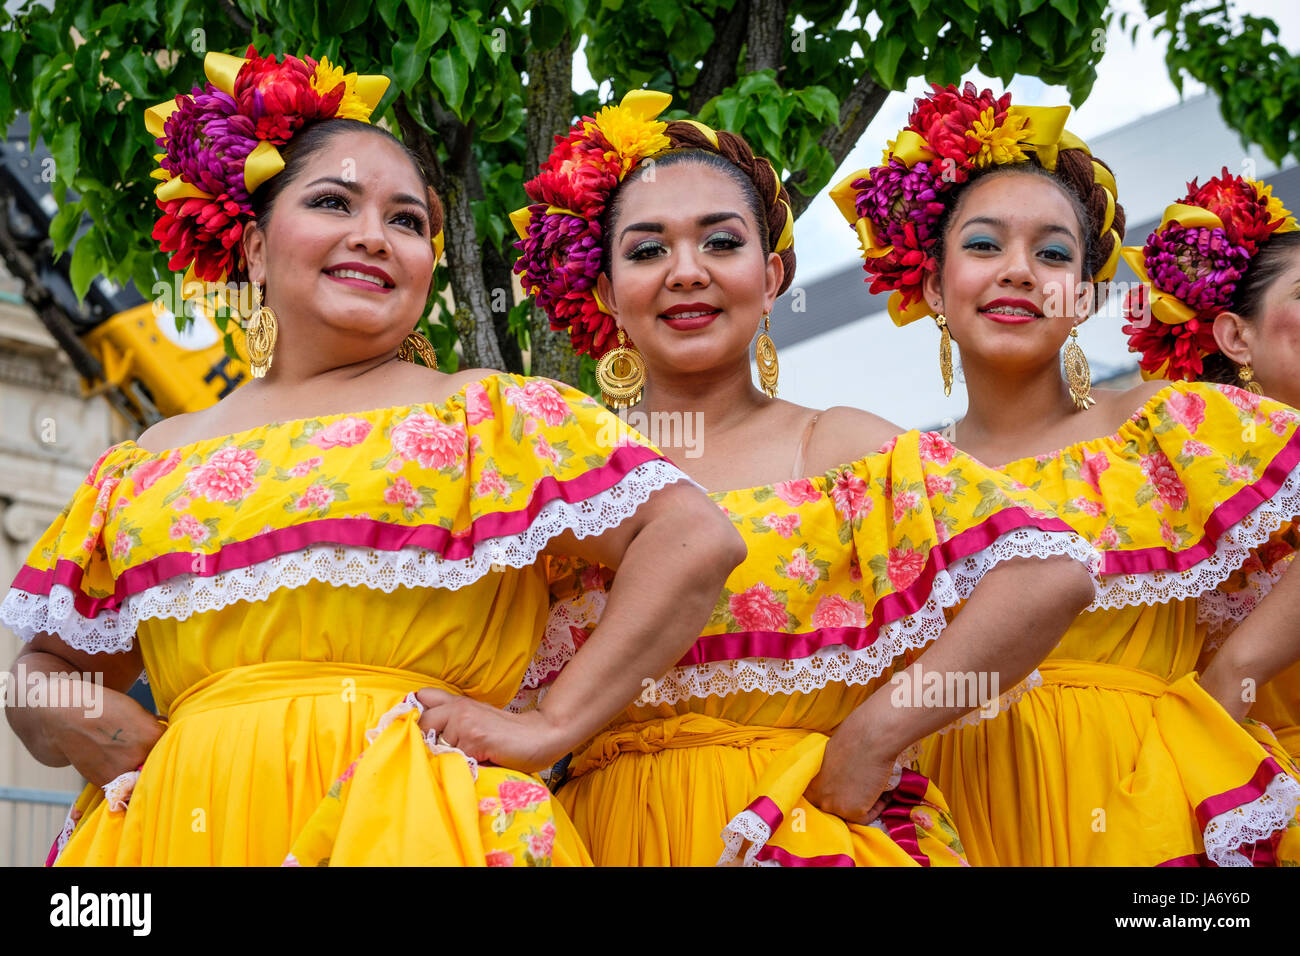 Eine Gruppe mexikanischer Mariachi-Tänzerinnen, die mexikanische traditionelle sinaloa-Kleider tragen, gelbe Kleider tragen, Mexikos kulturelles Erbe feiern, Folkloretanz, Gruppenfoto, vor die Kamera schauen. Stockfoto